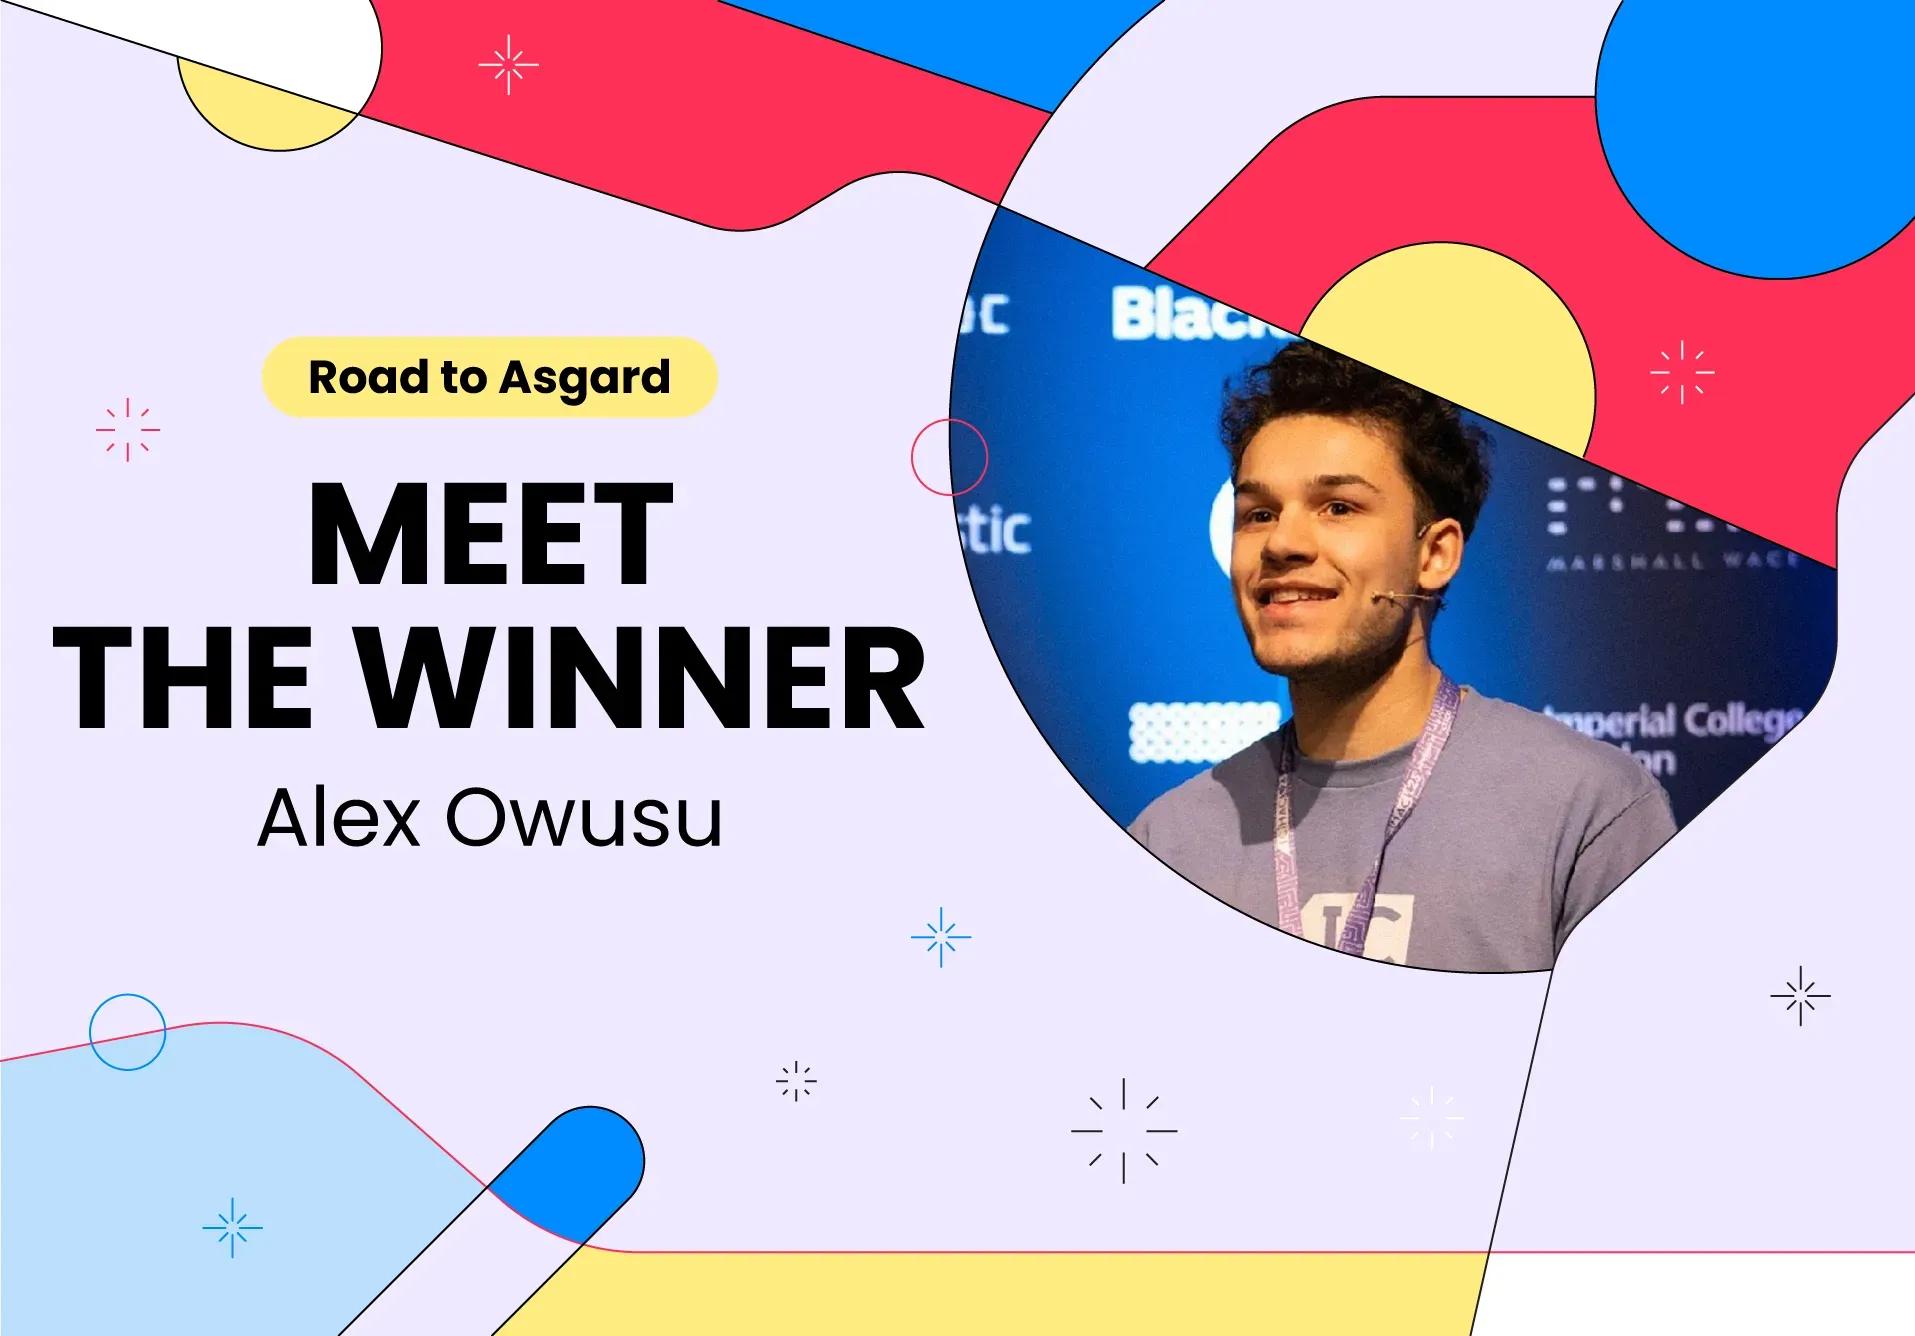 Meet the winner: Alex Owusu